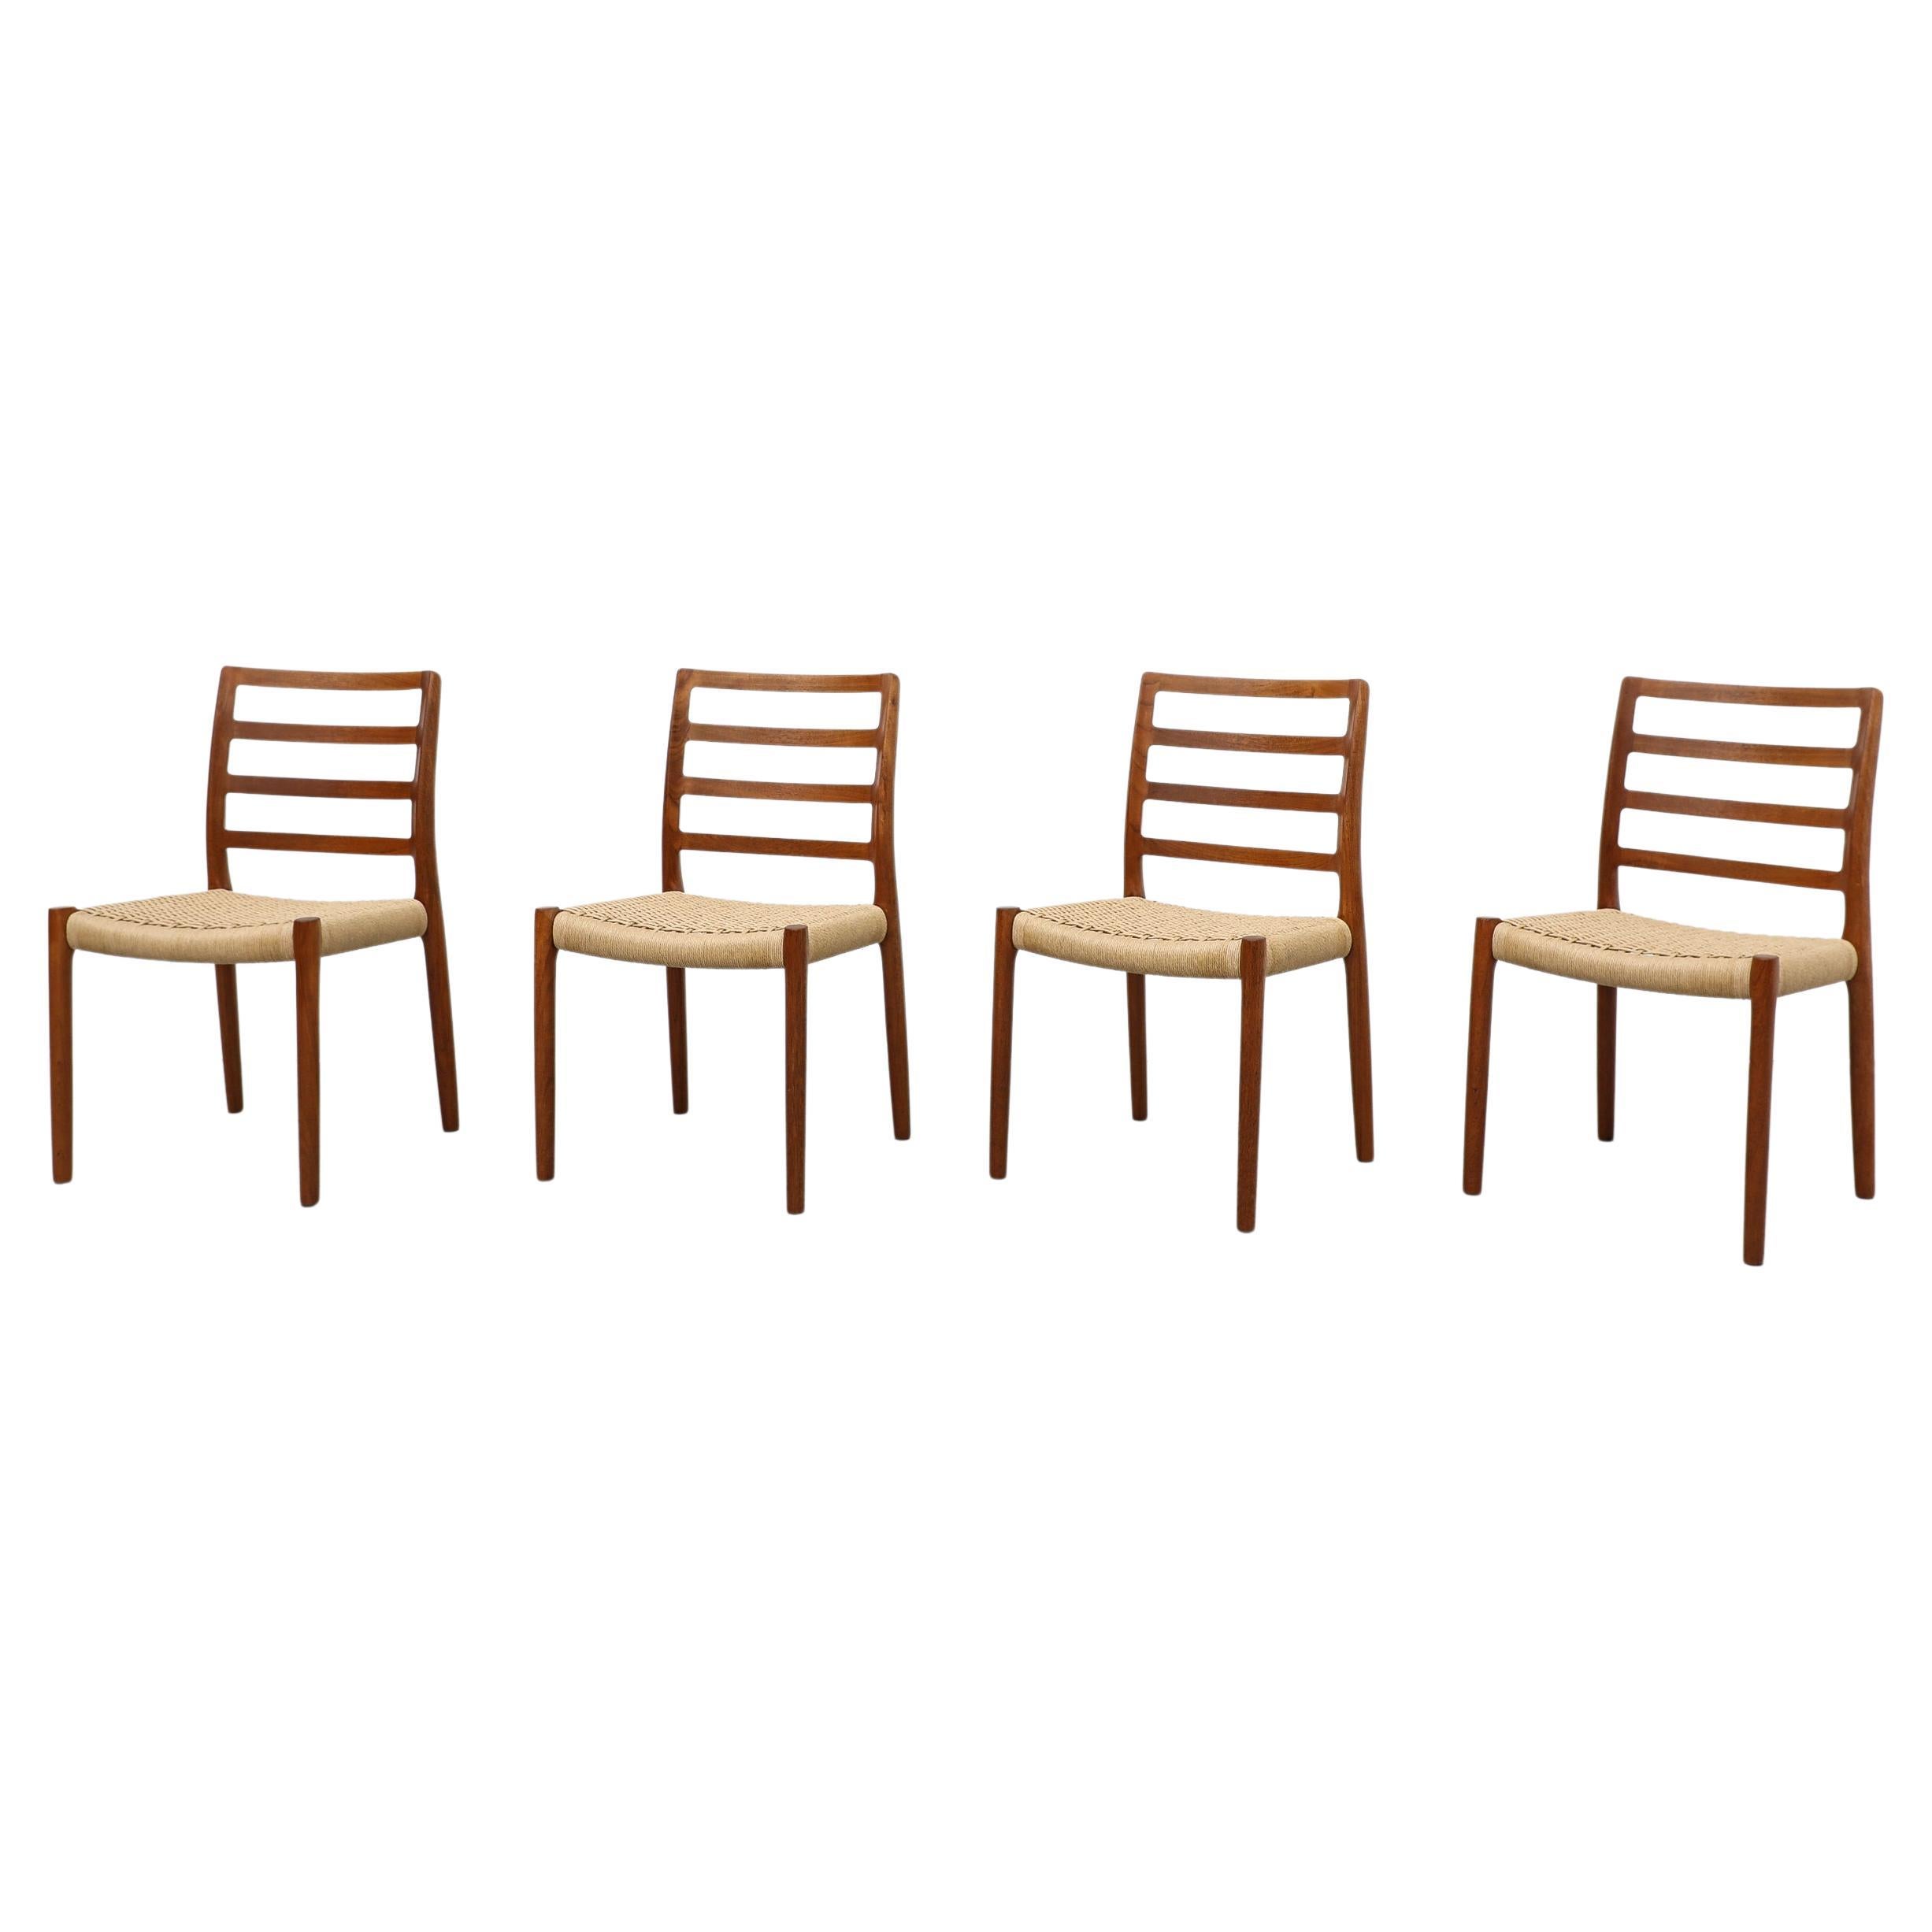 Set of 4 Model 85 Teak Ladder Back Chairs by Niels Moller for J.L. Moller